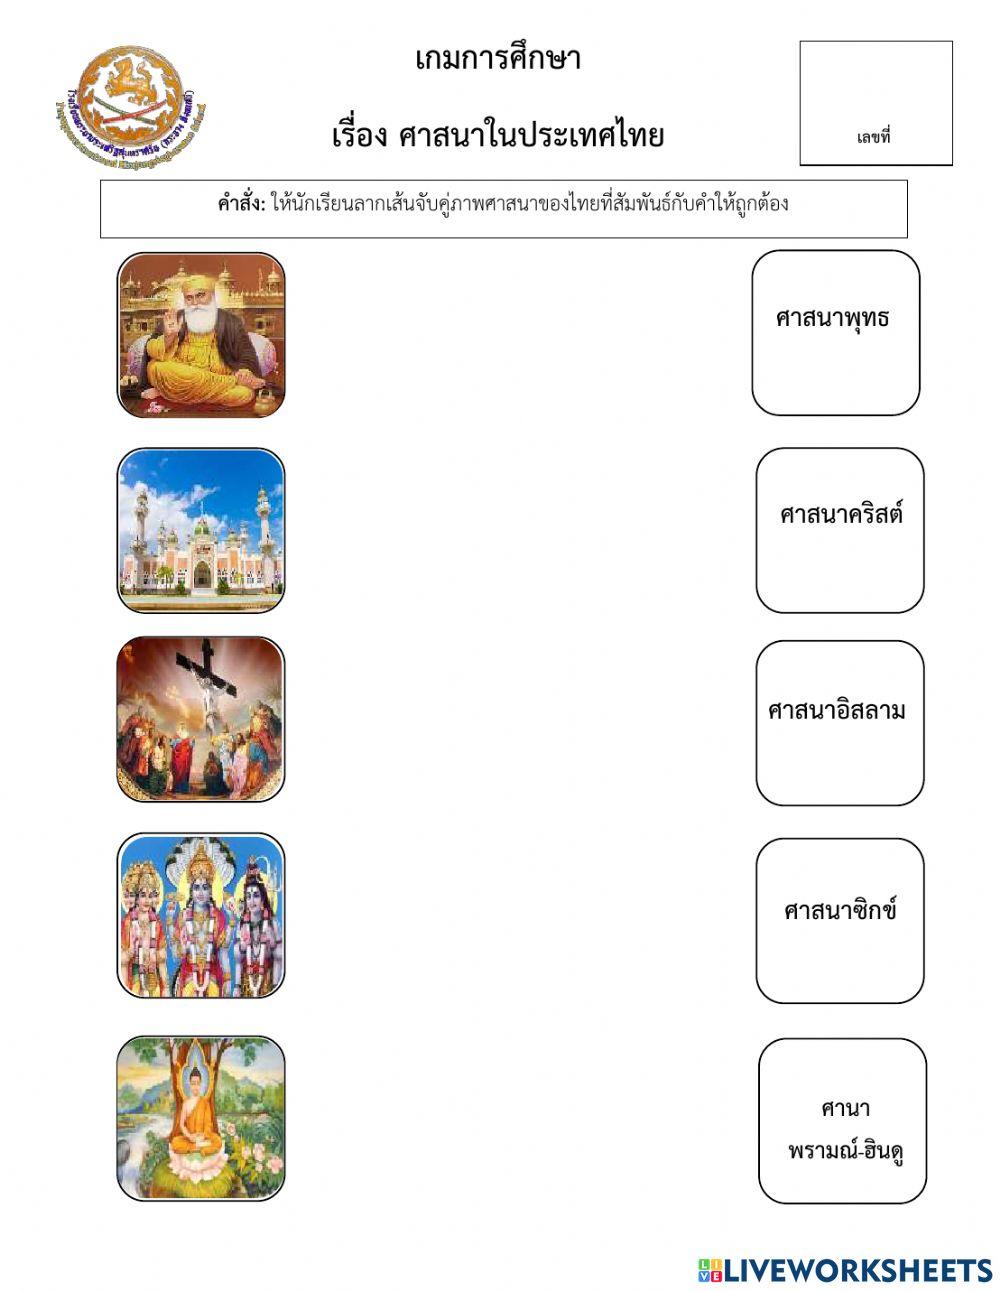 เกมการศึกษา ศาสนาในไทย